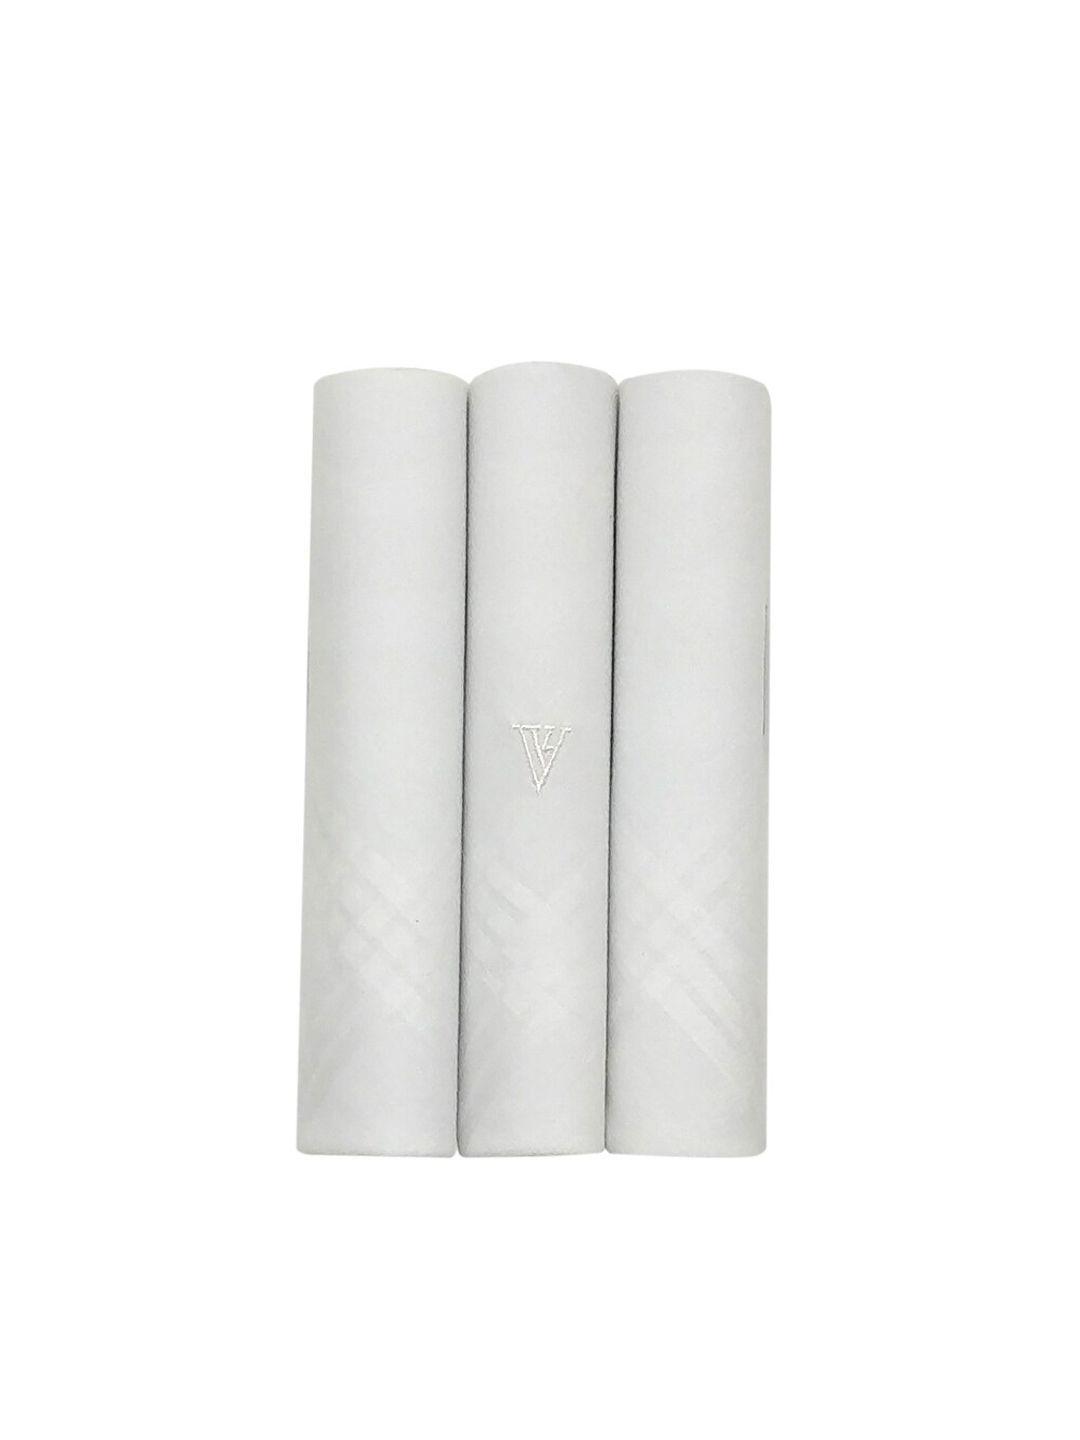 van-heusen-men-pack-of-3-white-solid-handkerchiefs-gift-set